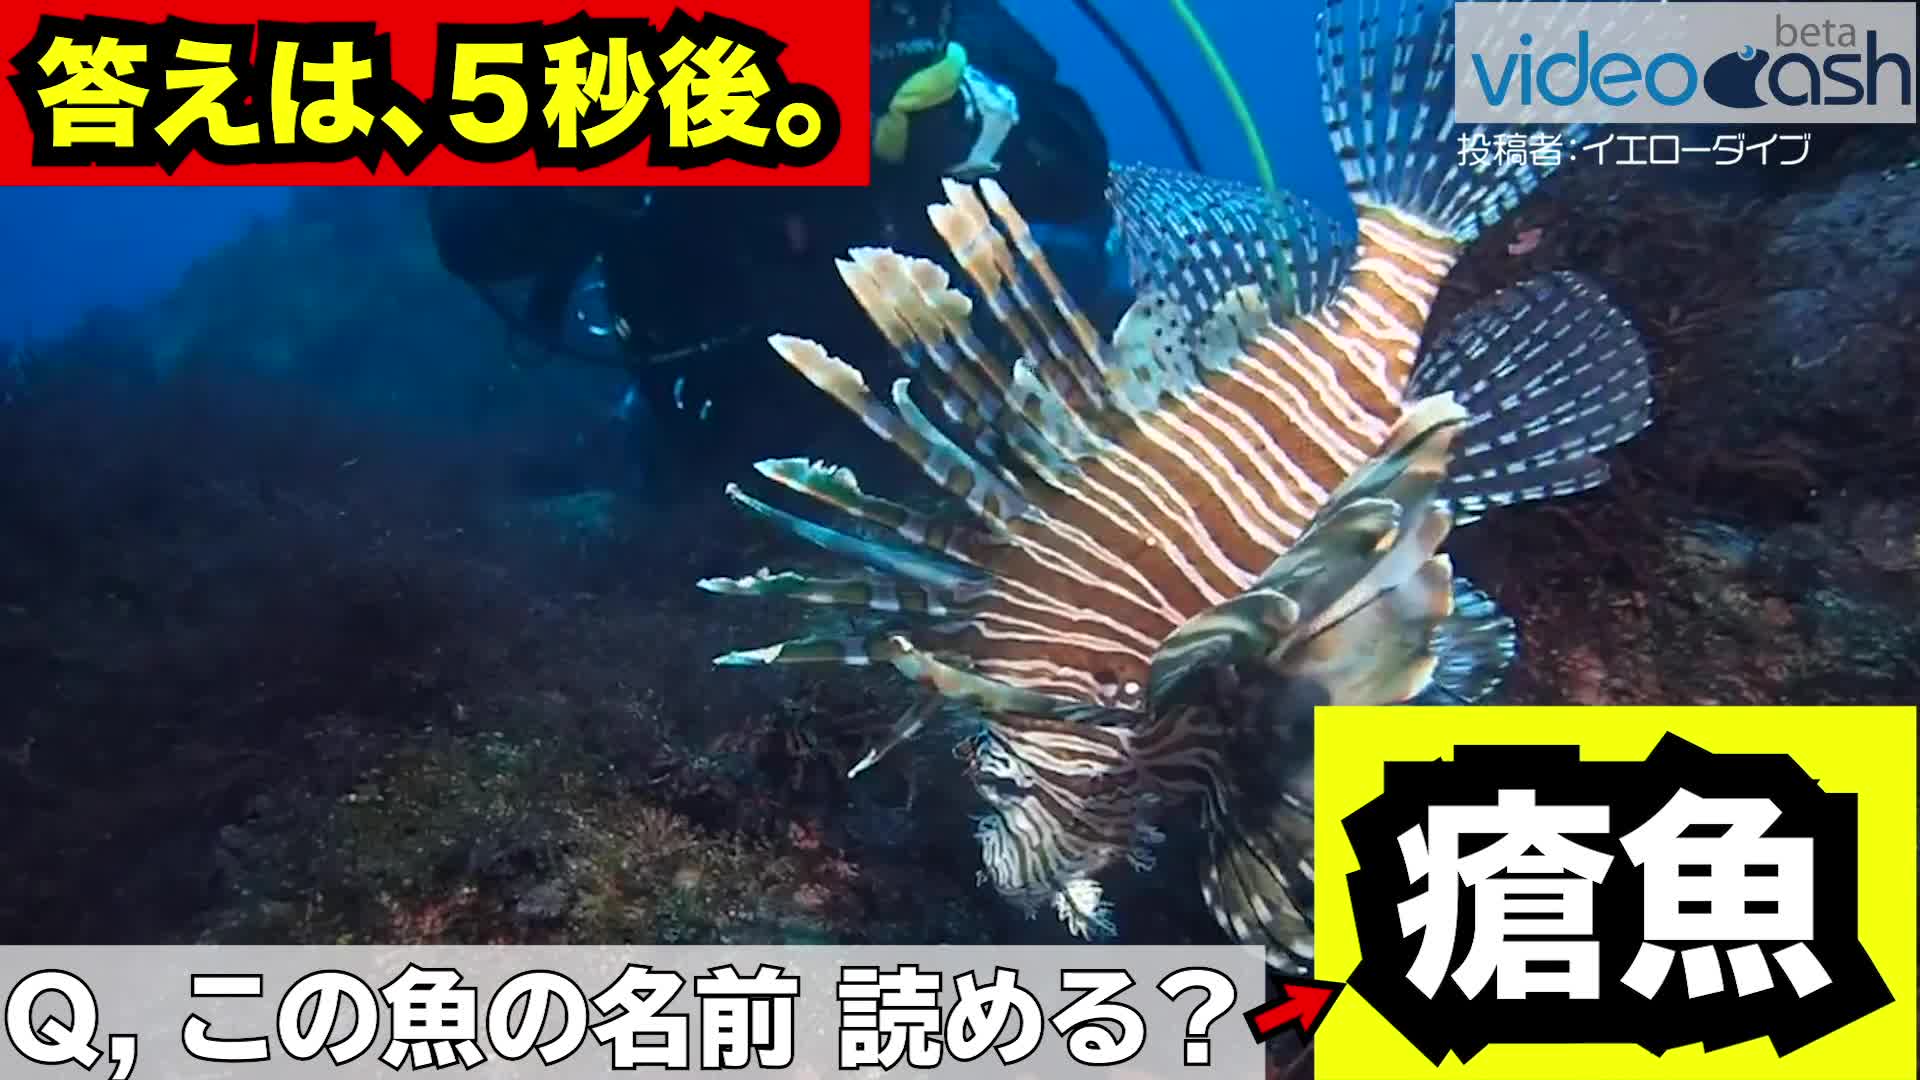 この魚の漢字 瘡魚 読めますか Videocash ビデオキャッシュ Yahoo Japan